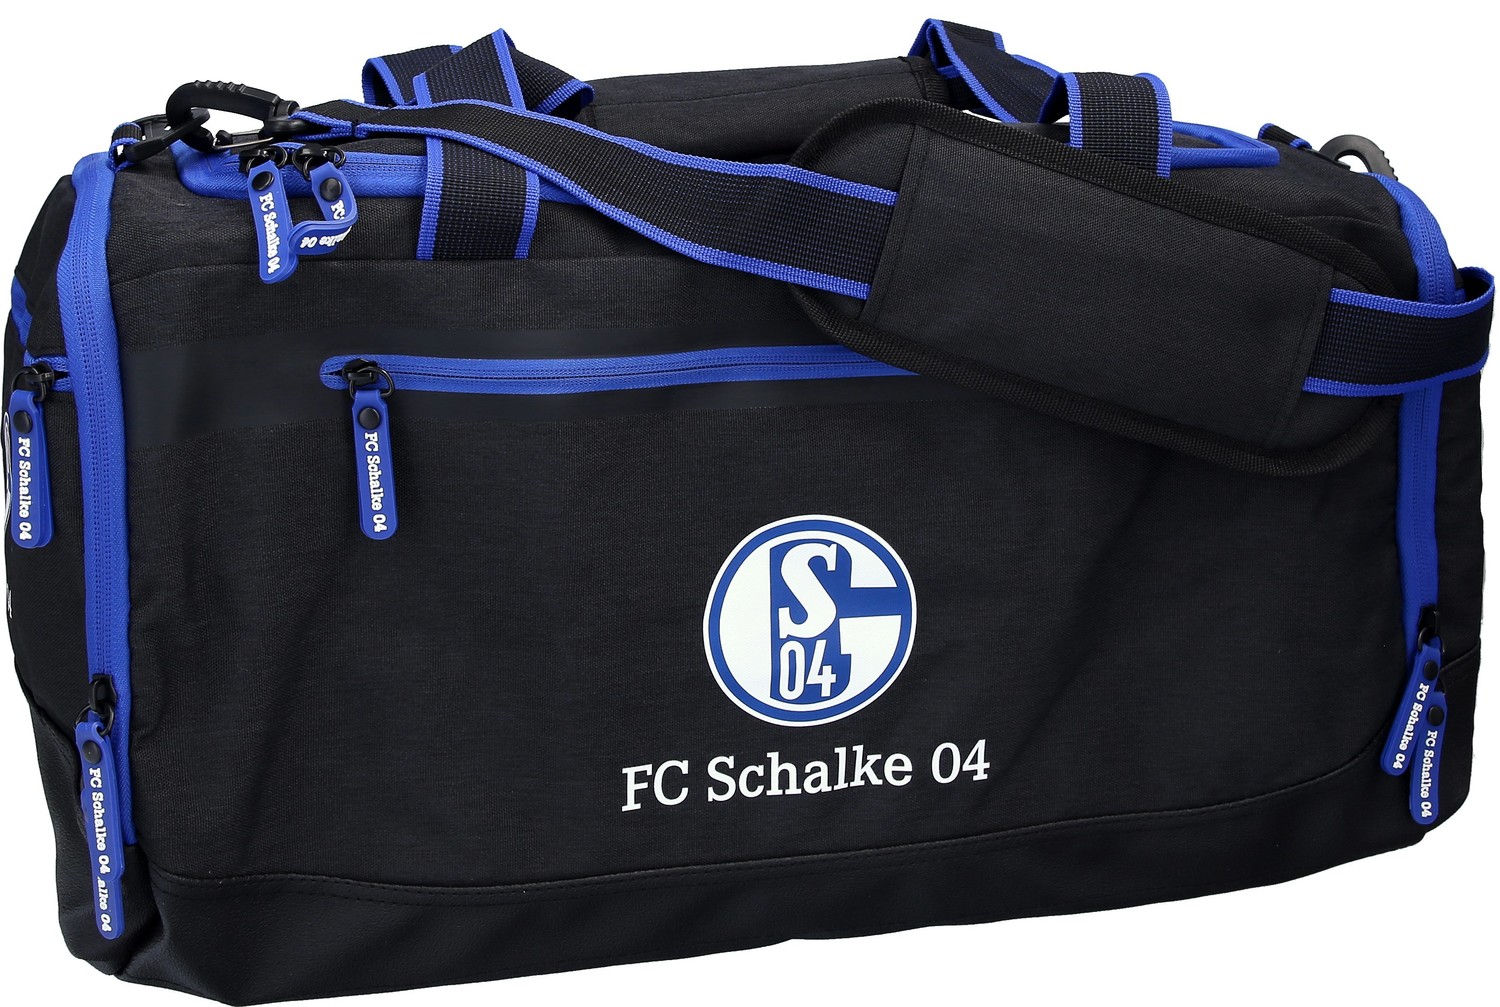 Hüfttasche FC Schalke 04 Bauchtasche Tasche Stadion Gürteltasche Bauchtasche S04 